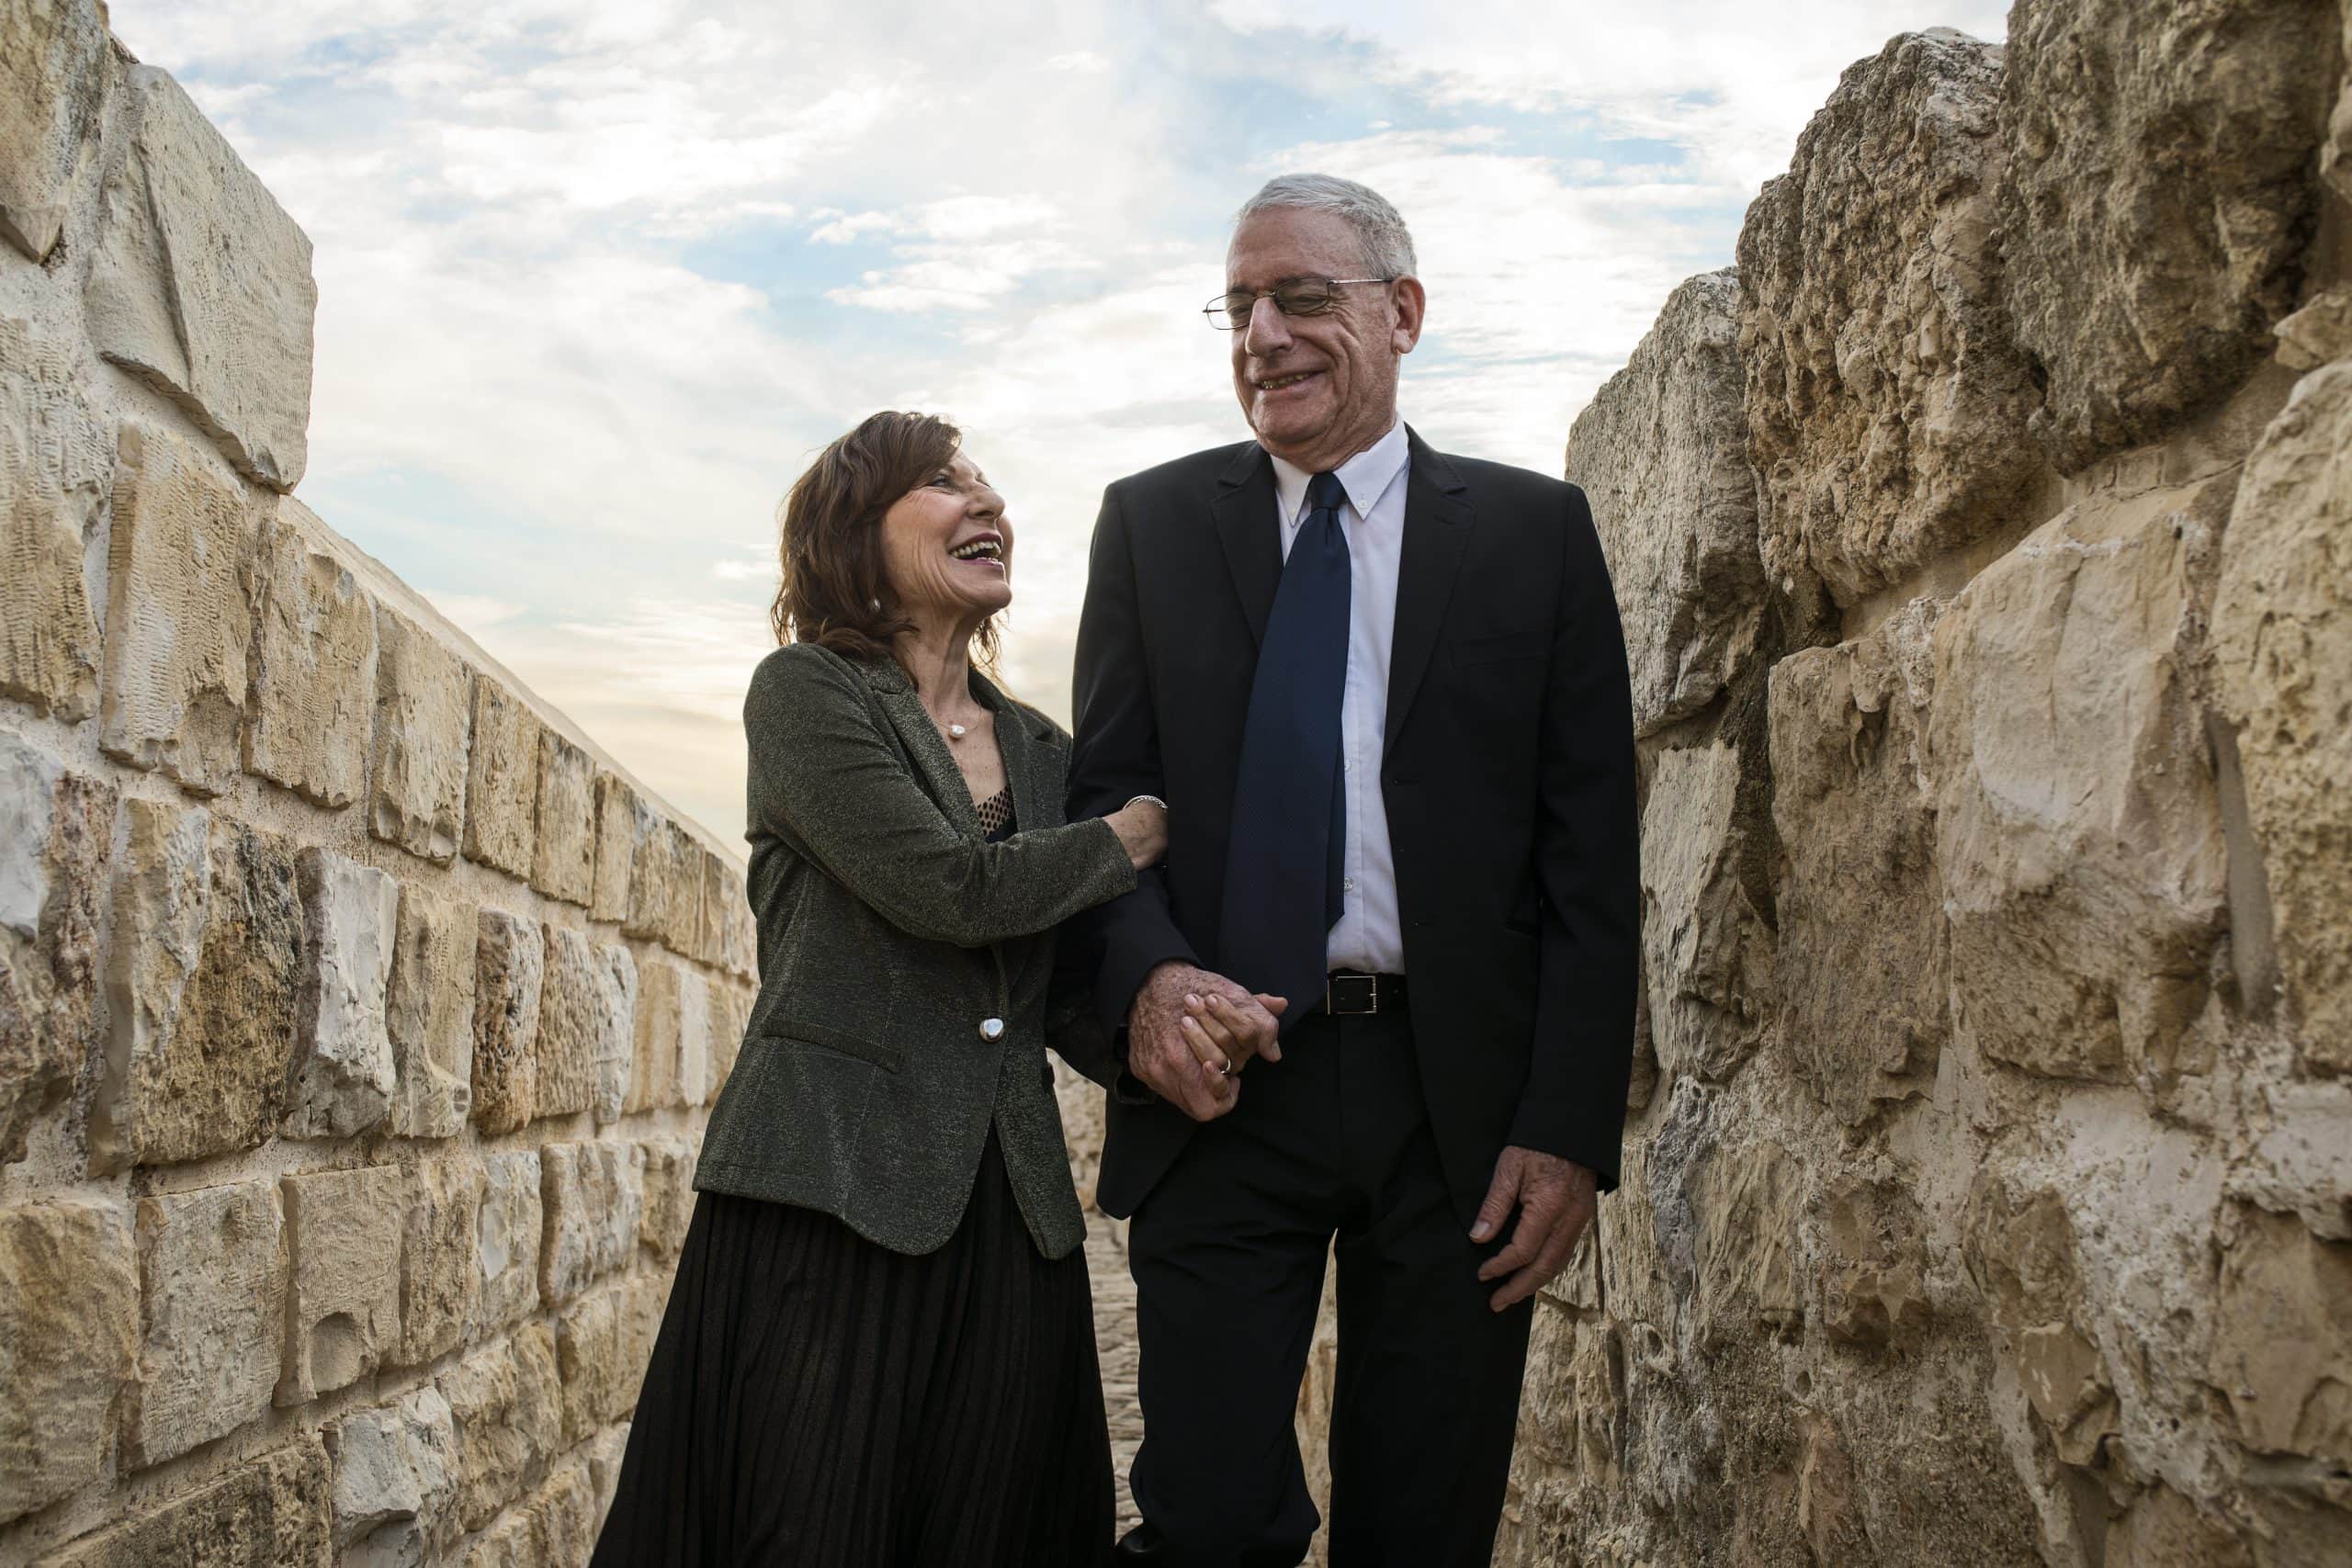 שער המים בירושלים: מסע ארכאולוגי אל העבר